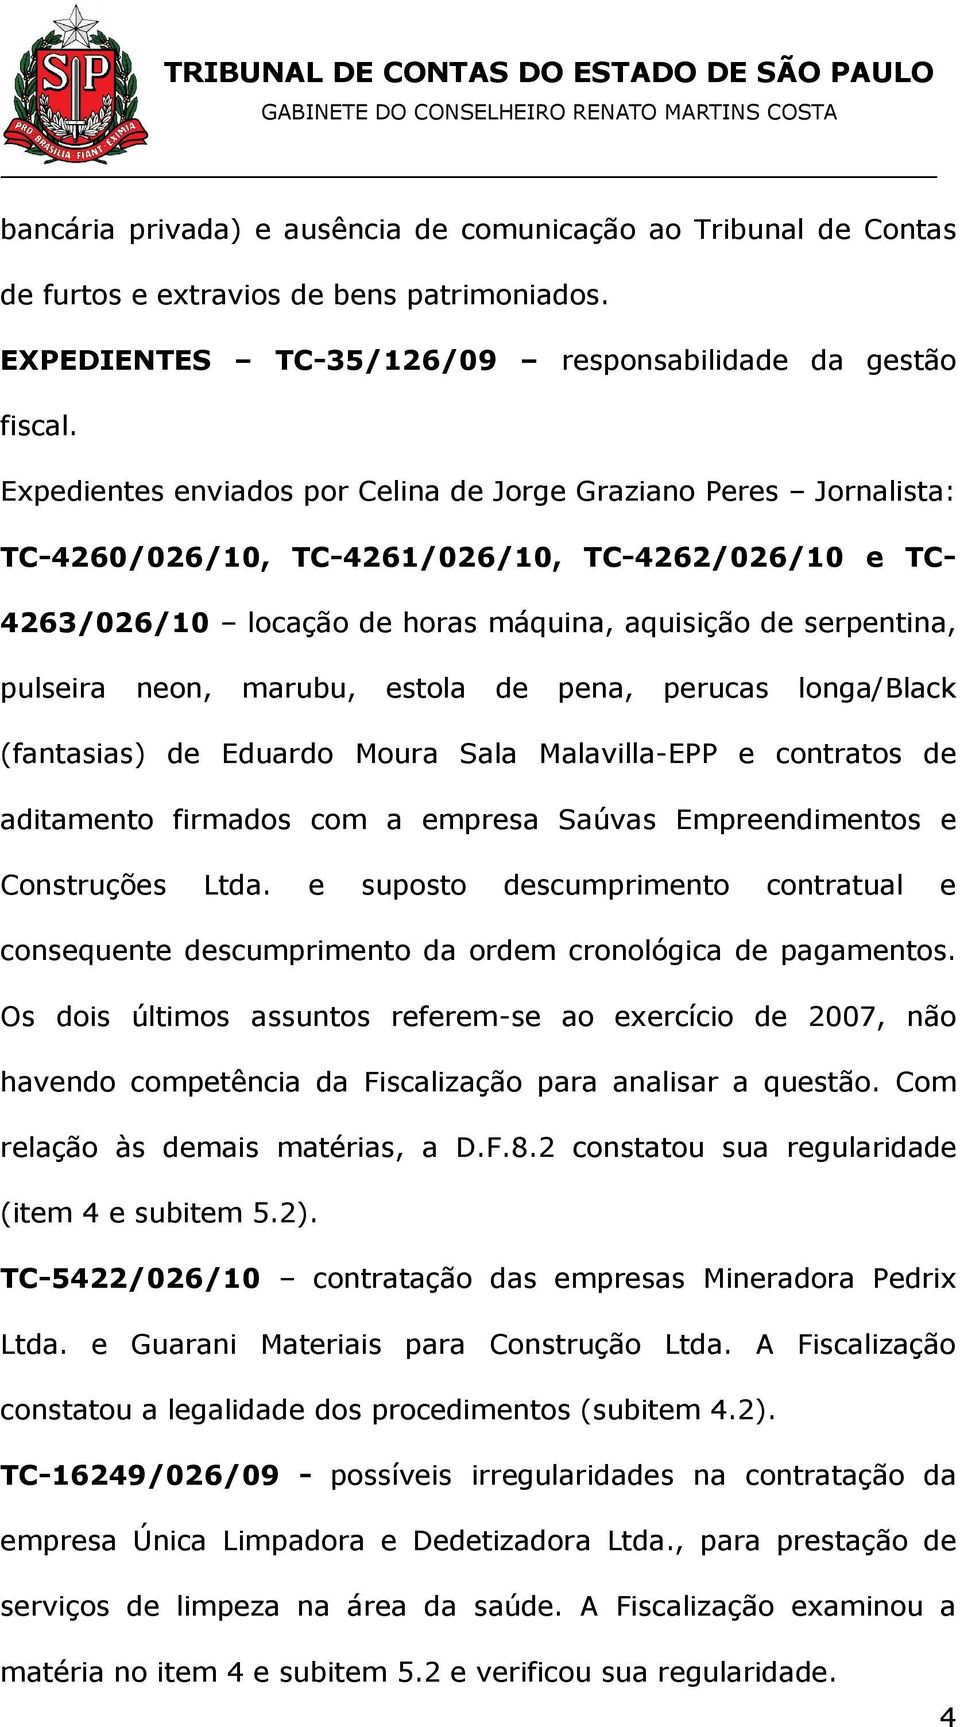 marubu, estola de pena, perucas longa/black (fantasias) de Eduardo Moura Sala Malavilla-EPP e contratos de aditamento firmados com a empresa Saúvas Empreendimentos e Construções Ltda.